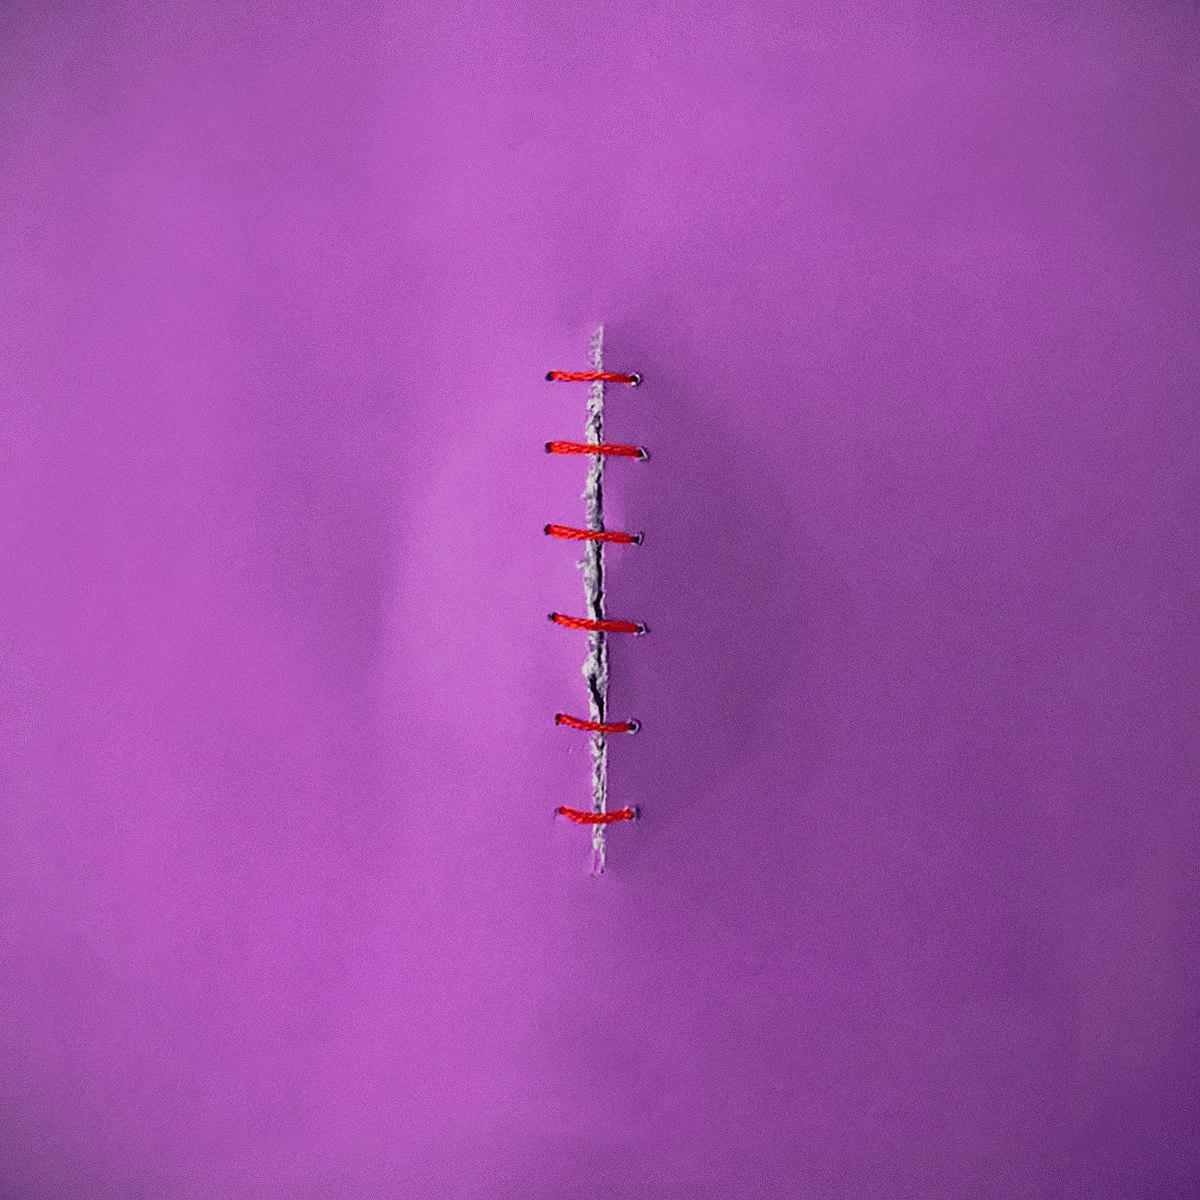 Papel violeta remachado con hilos rojos que semeja una vulva cocida